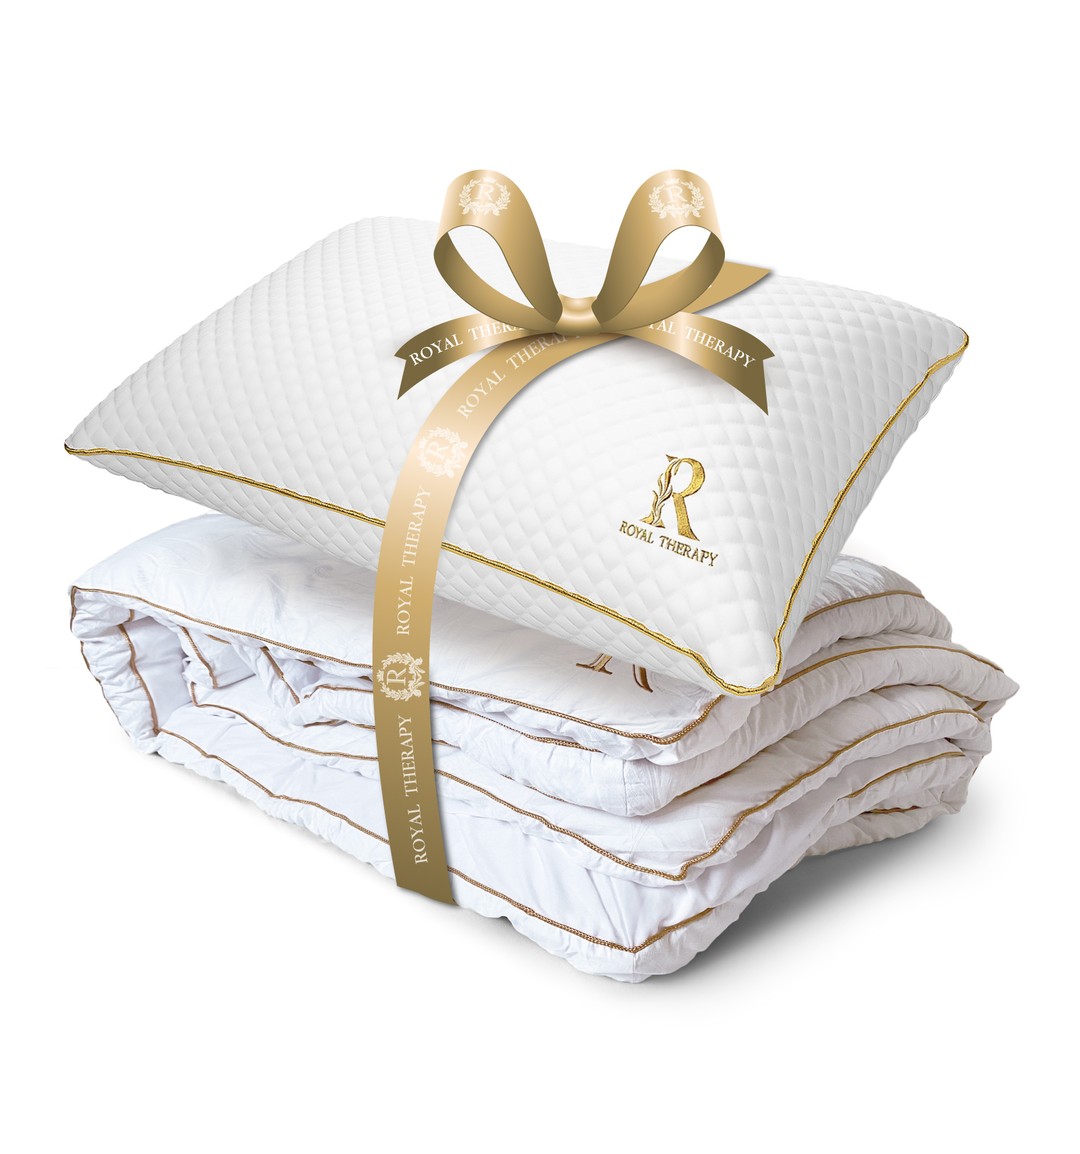 Royal Therapy Mattress Pad - 100% Cotton, Plush Thick Mattress Pad